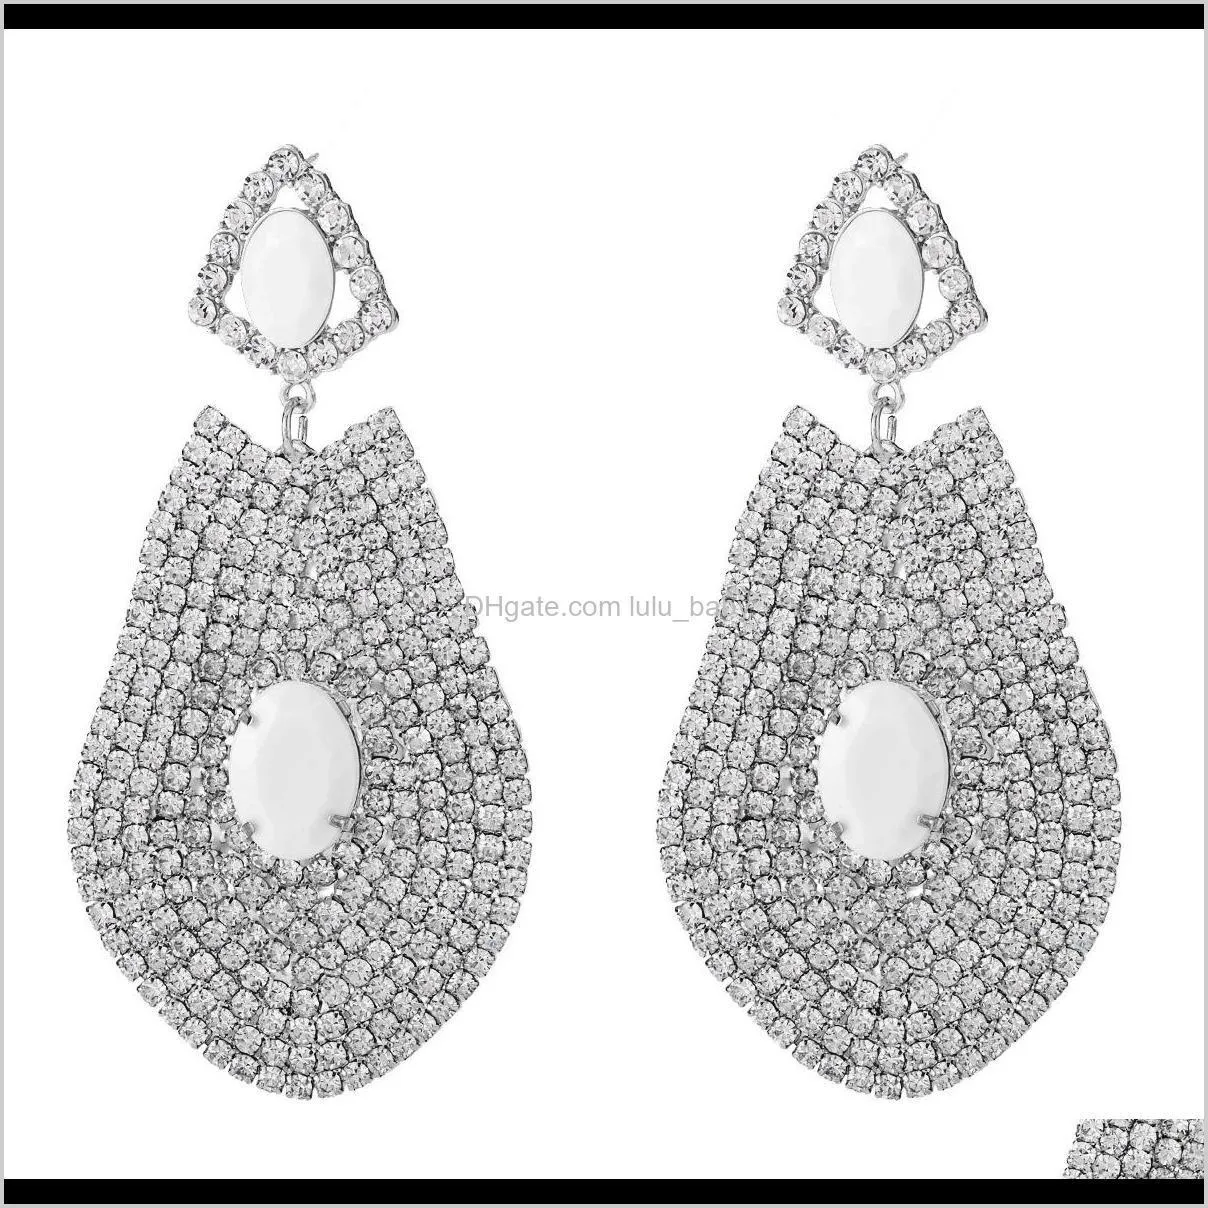 exaggerated water drop shaped diamond earrings geometric earrings women`s autumn earrings bohemian style